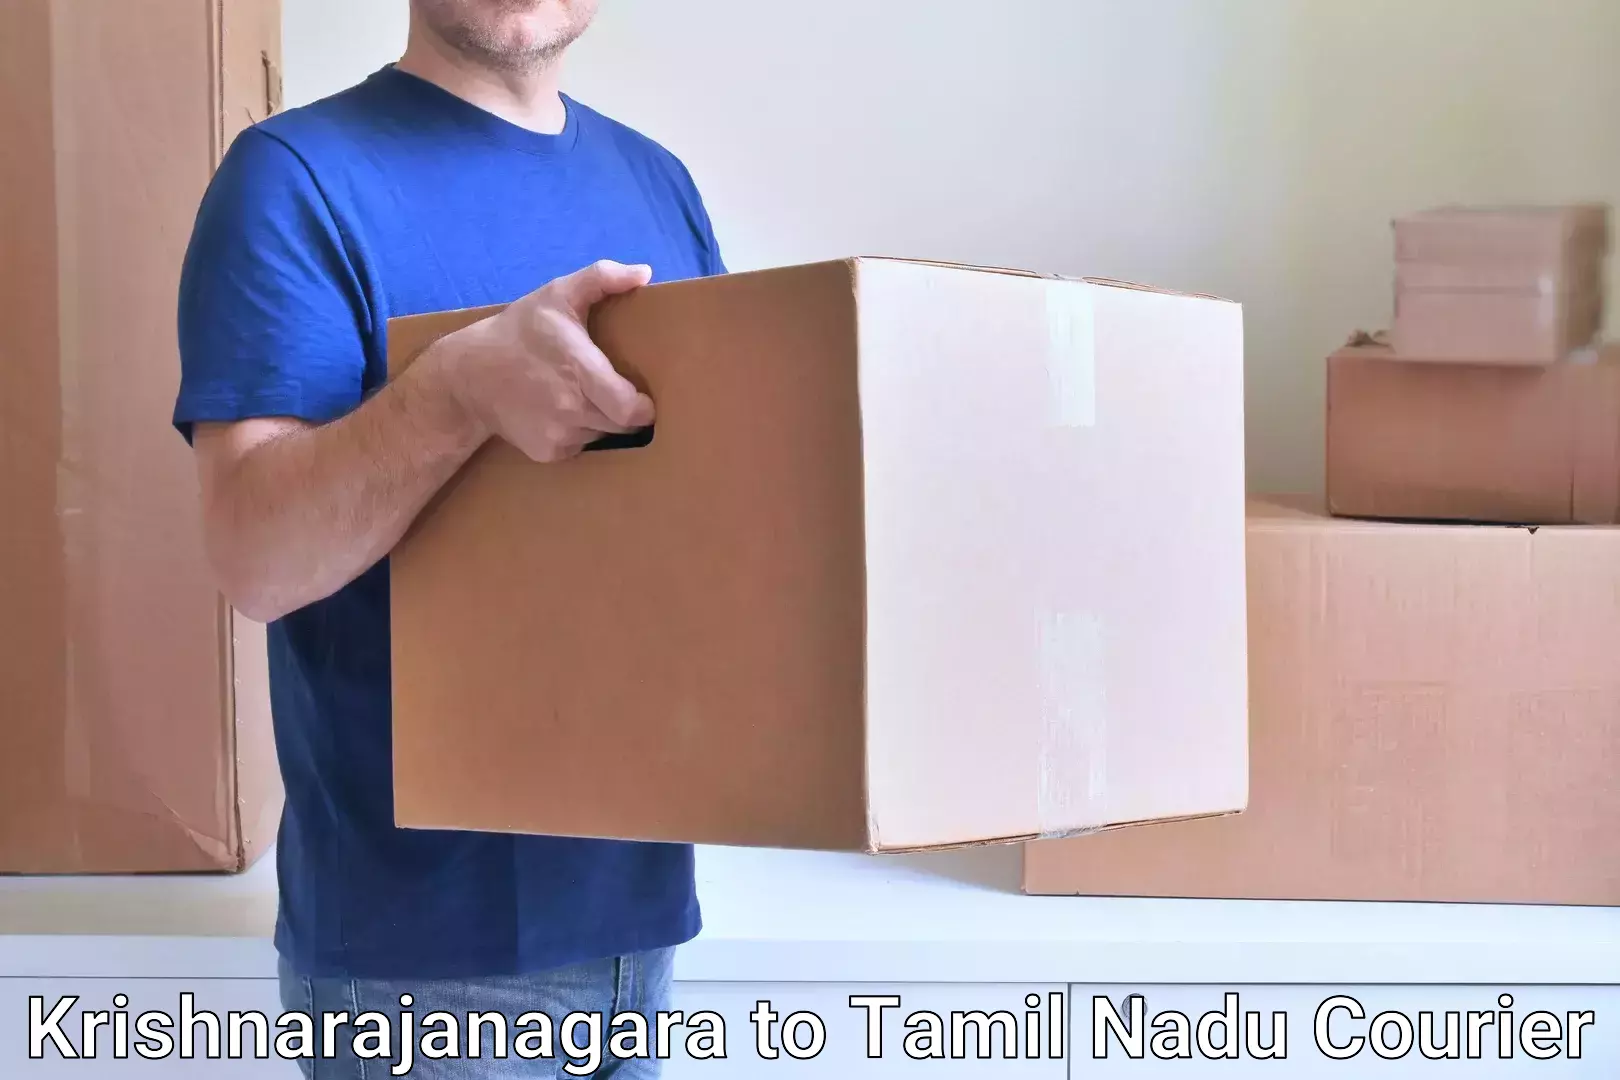 Affordable parcel service Krishnarajanagara to Chennai Port